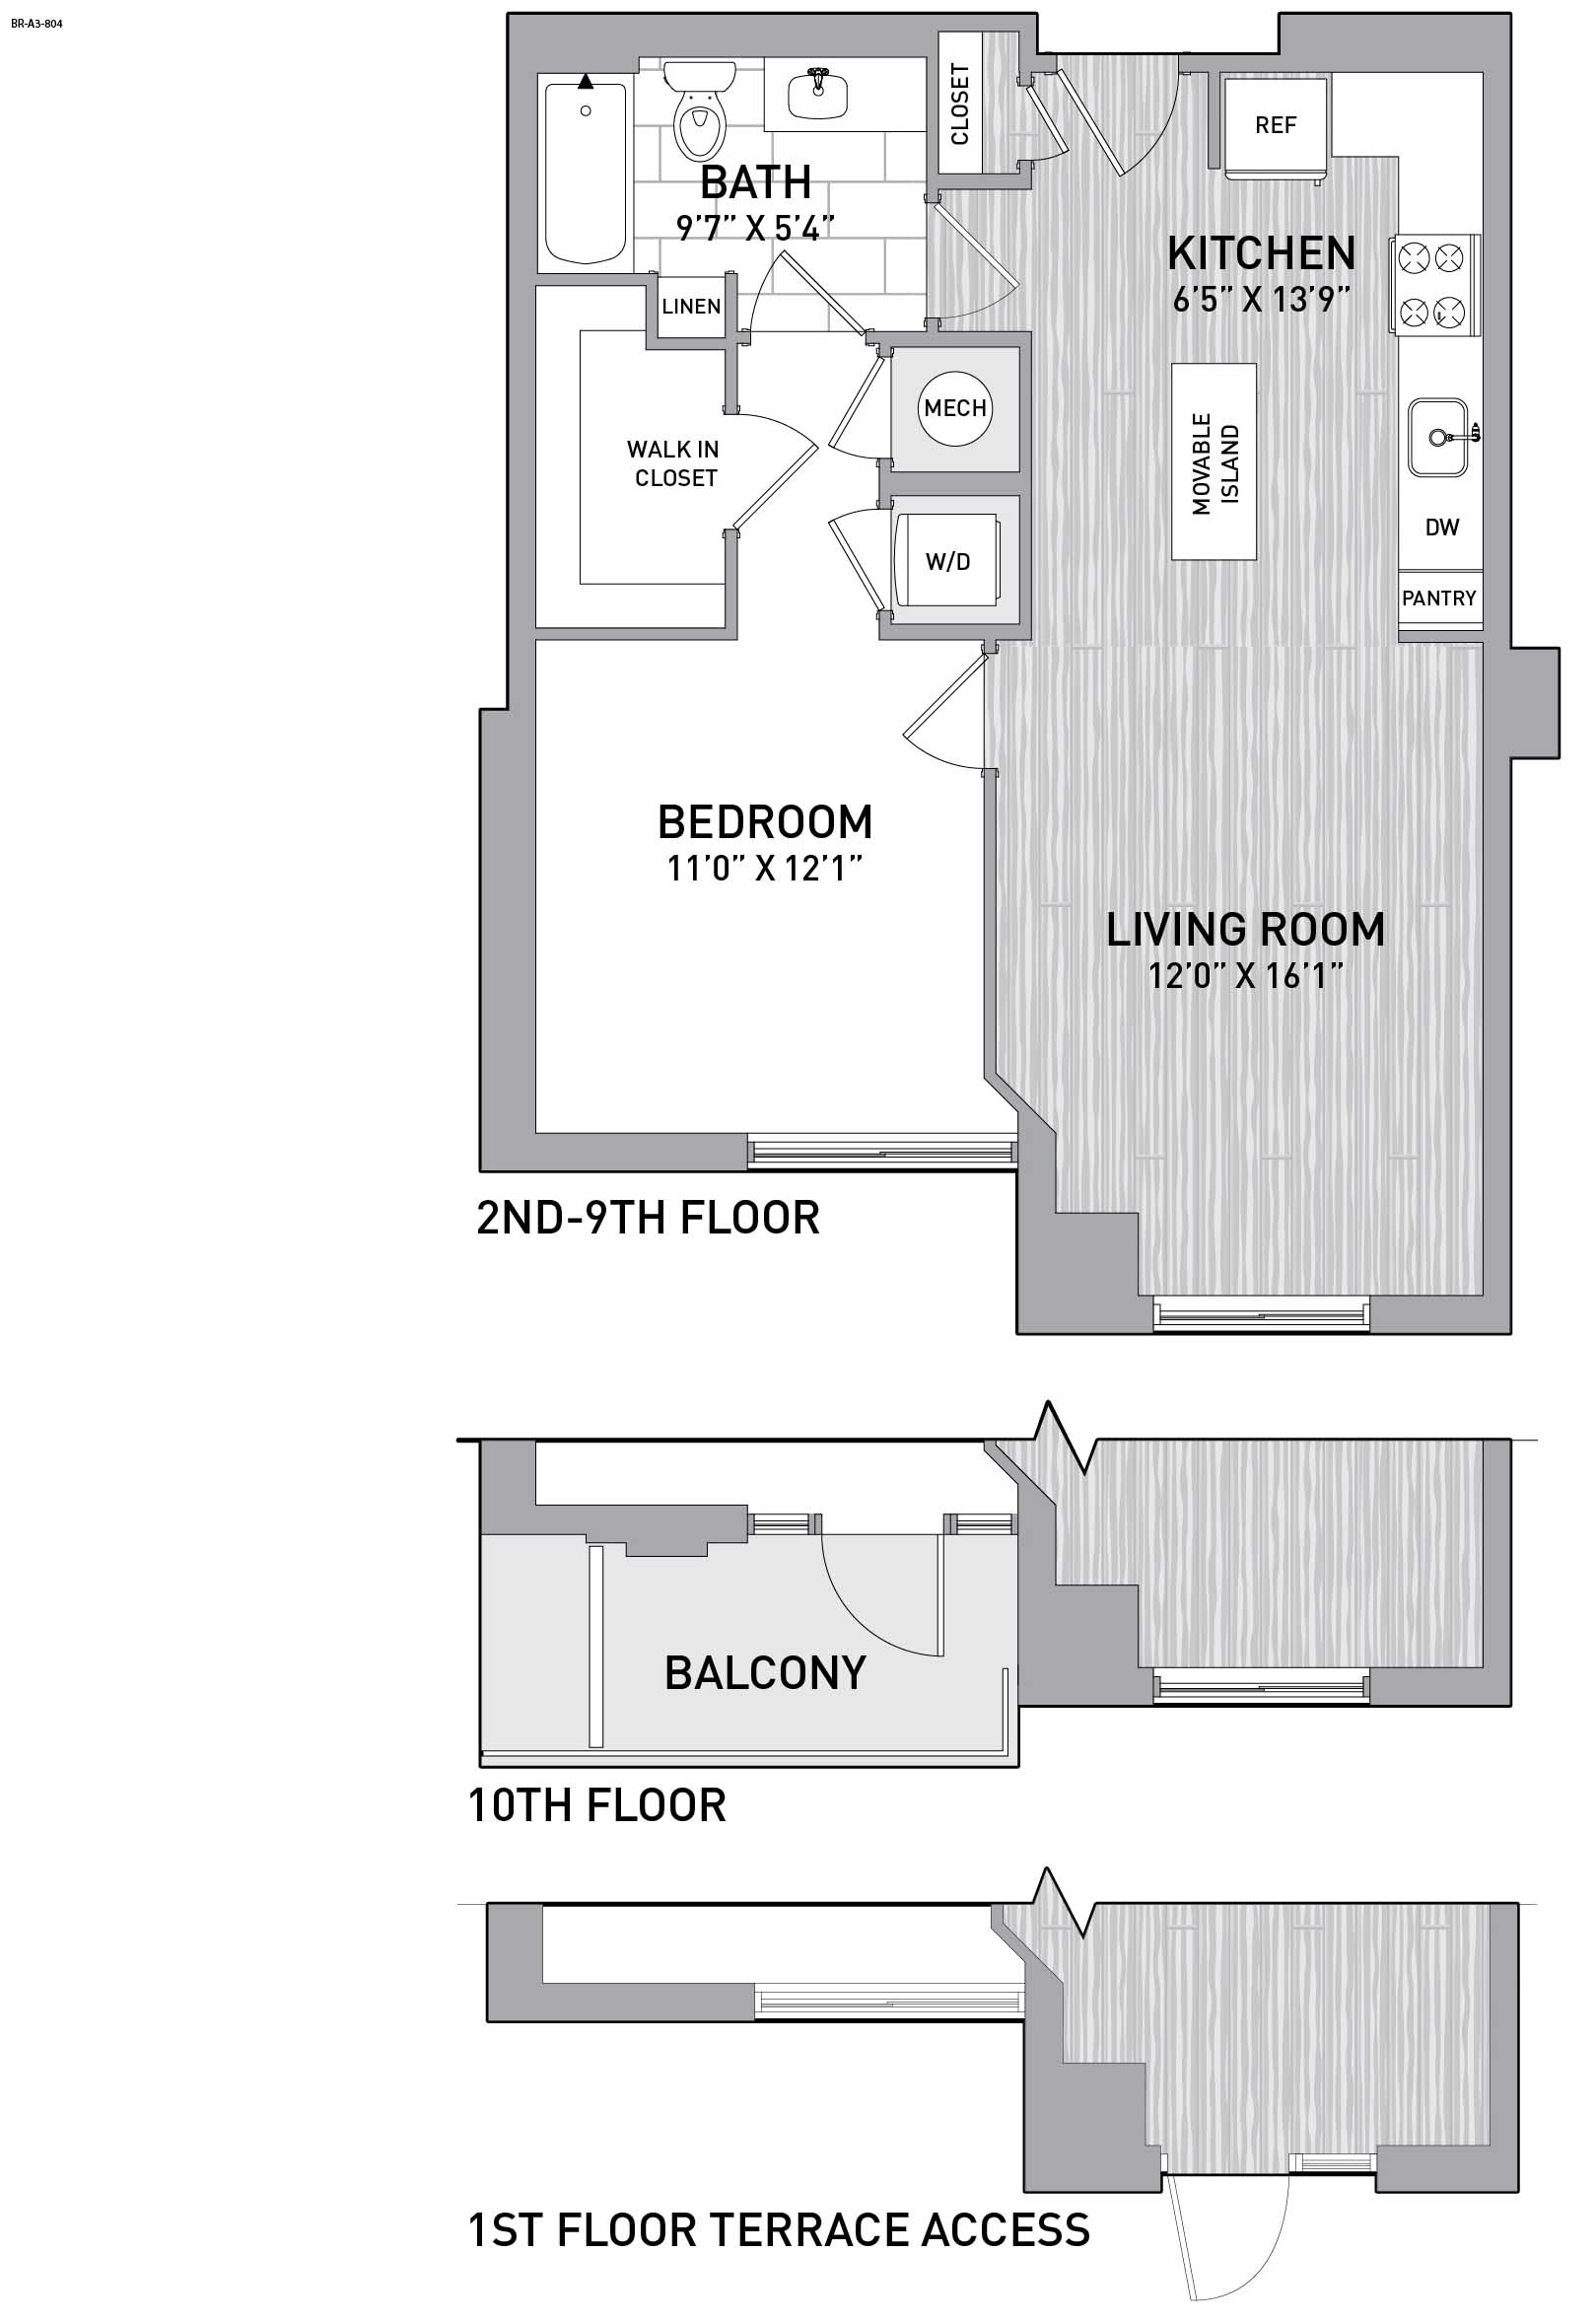 Floorplan Image of unit 151-0909